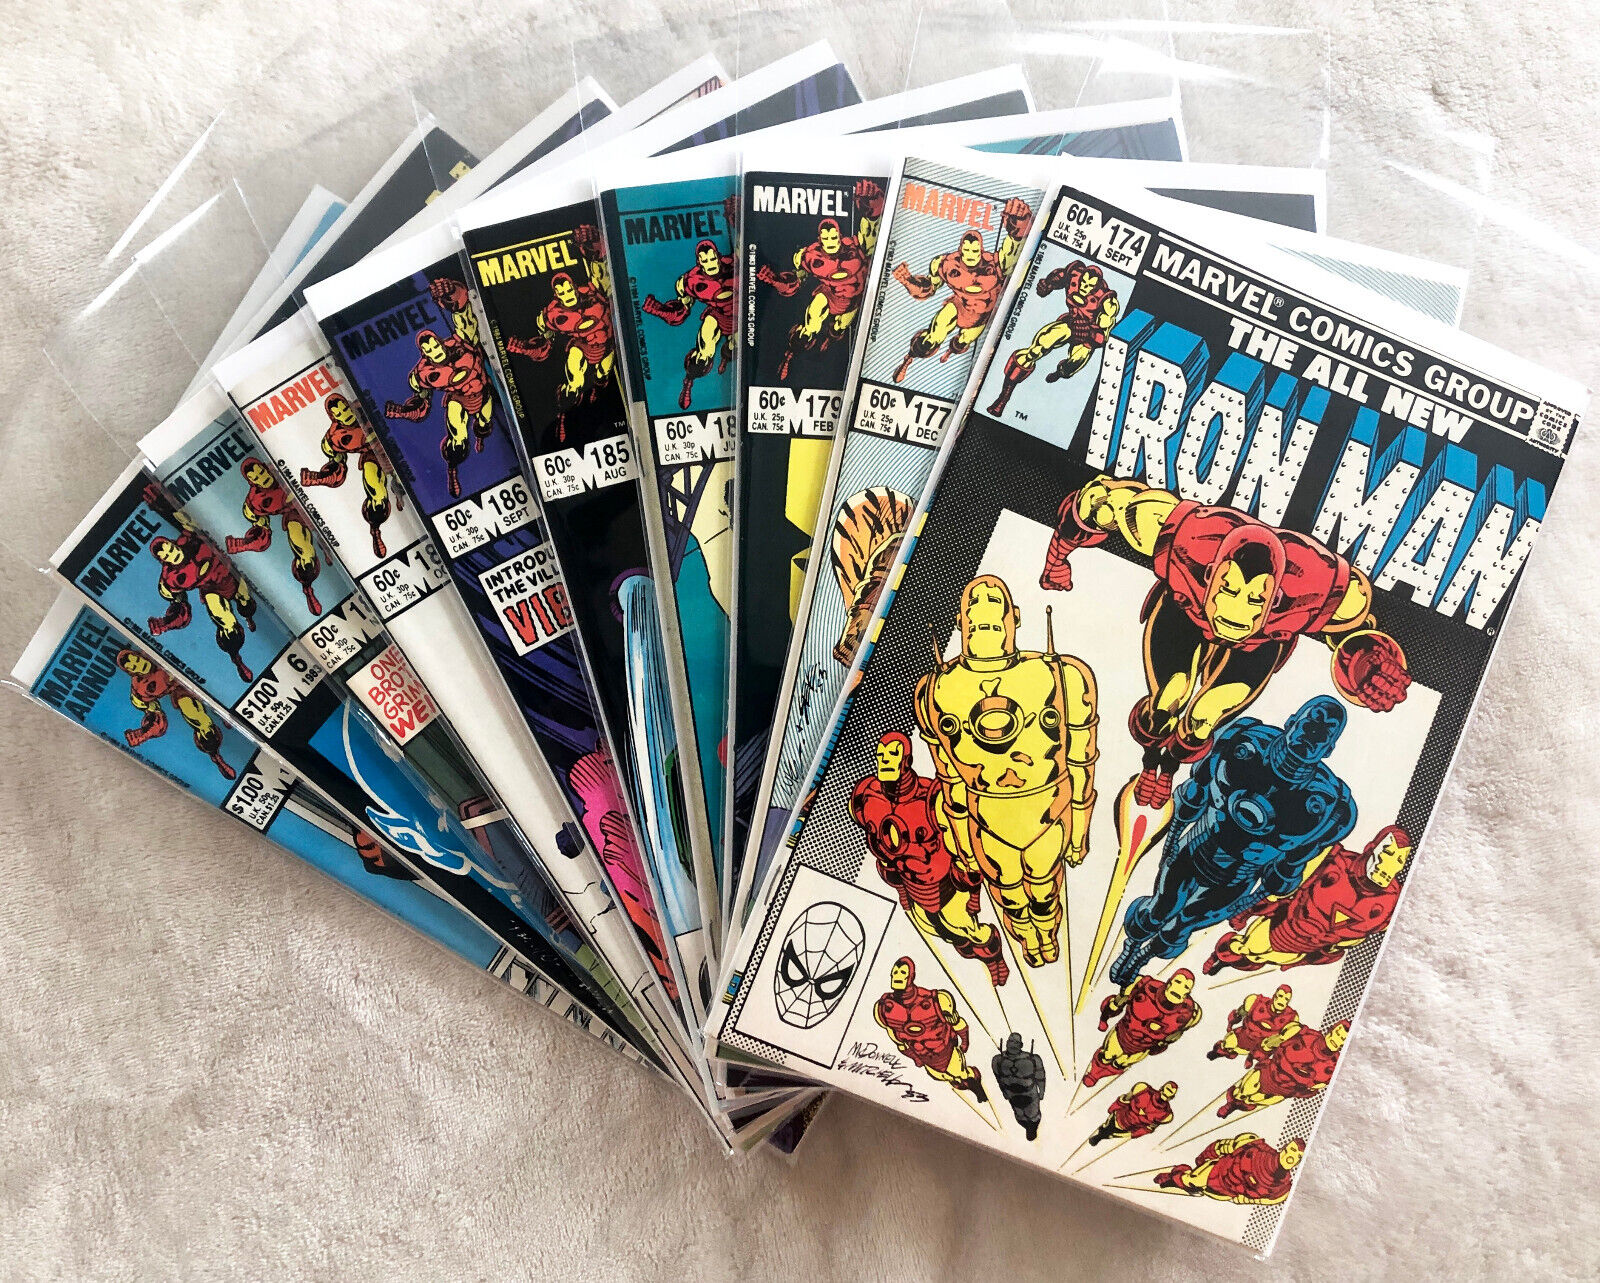 Iron Man #174 #177 #179 #184 #184 #186 #187 #188 Annuals #6 #7 Discount Run